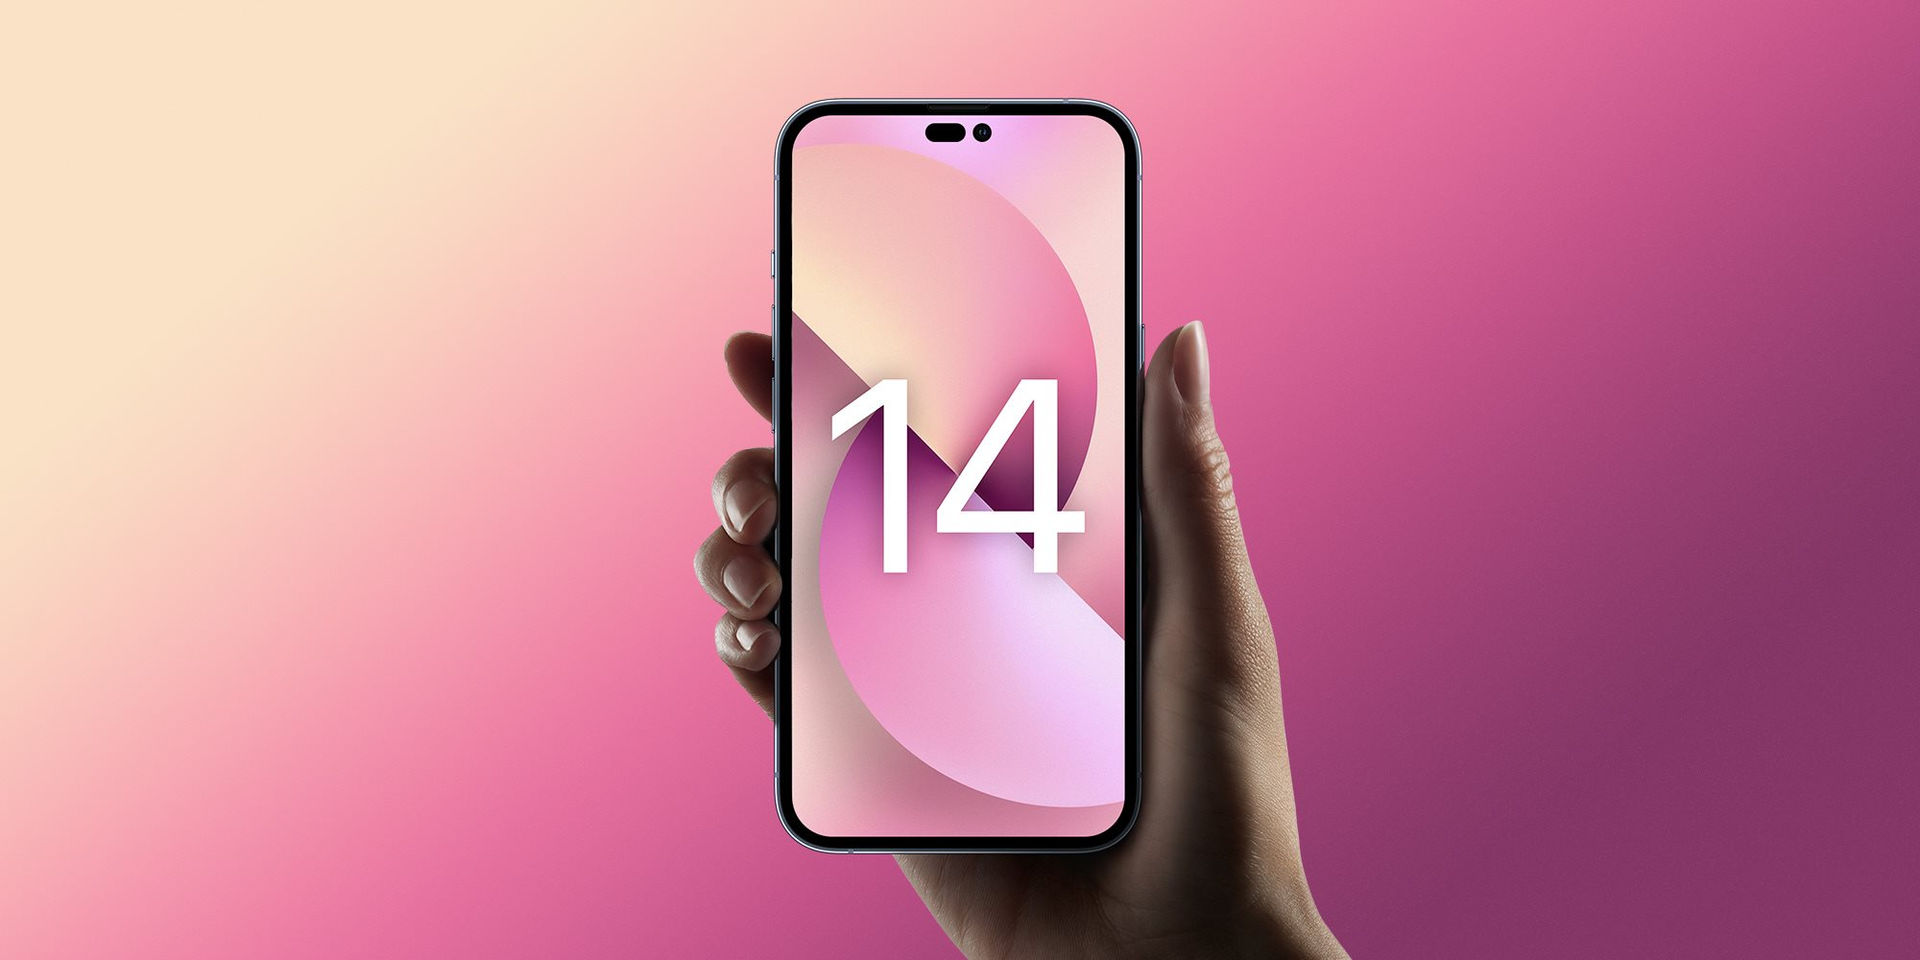 iPhone 14: Bạn có muốn sở hữu một chiếc iPhone tuyệt đỉnh không? iPhone 14 sẽ là một lựa chọn tuyệt vời cho bạn. Sự kết hợp hoàn hảo giữa thiết kế đẹp mắt và hiệu năng mạnh mẽ sẽ giúp bạn trải nghiệm một cách tuyệt vời. Hãy xem hình ảnh để cảm nhận ngay những tính năng mới và nâng cấp của iPhone